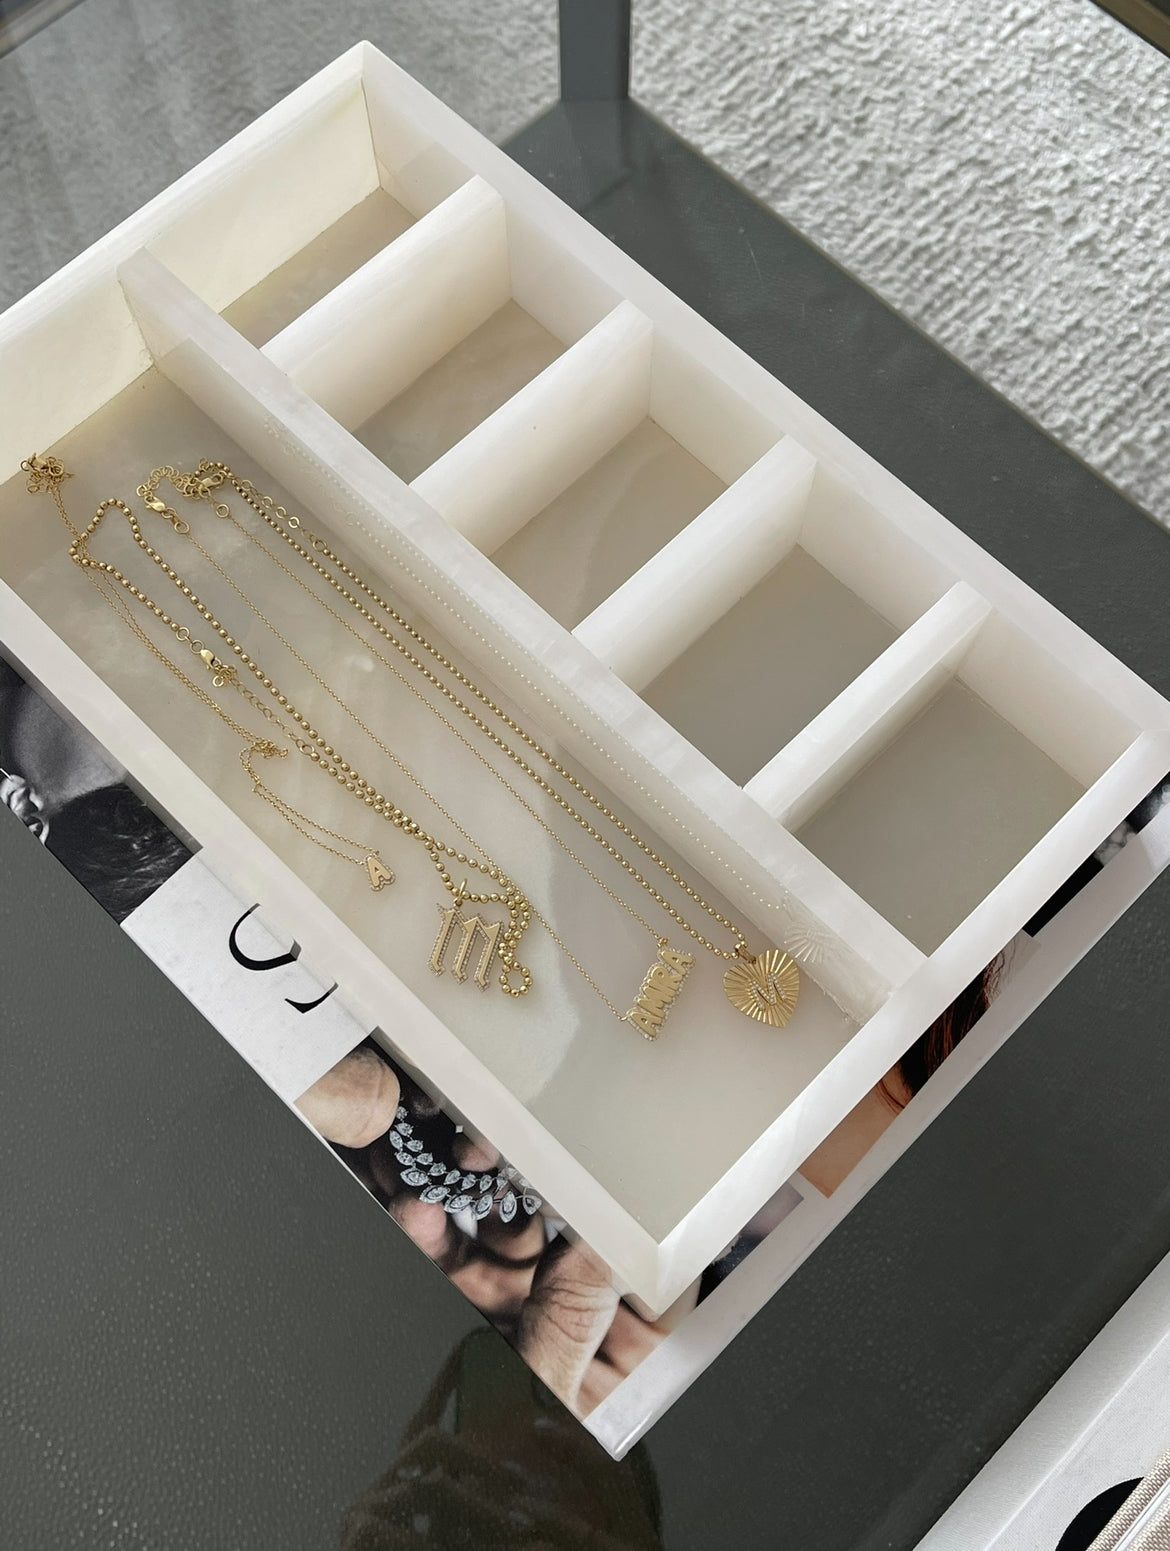 Marmi Jewellery Box (White Onyx)